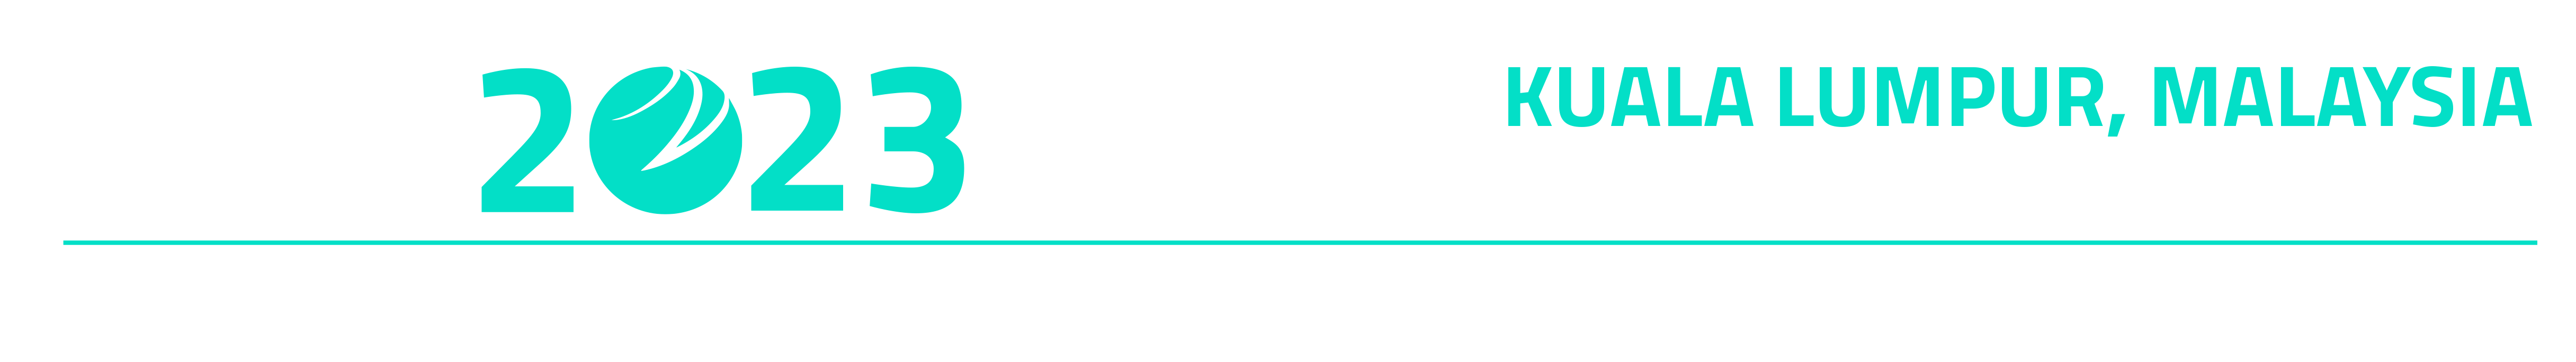 D&A APAC 2023